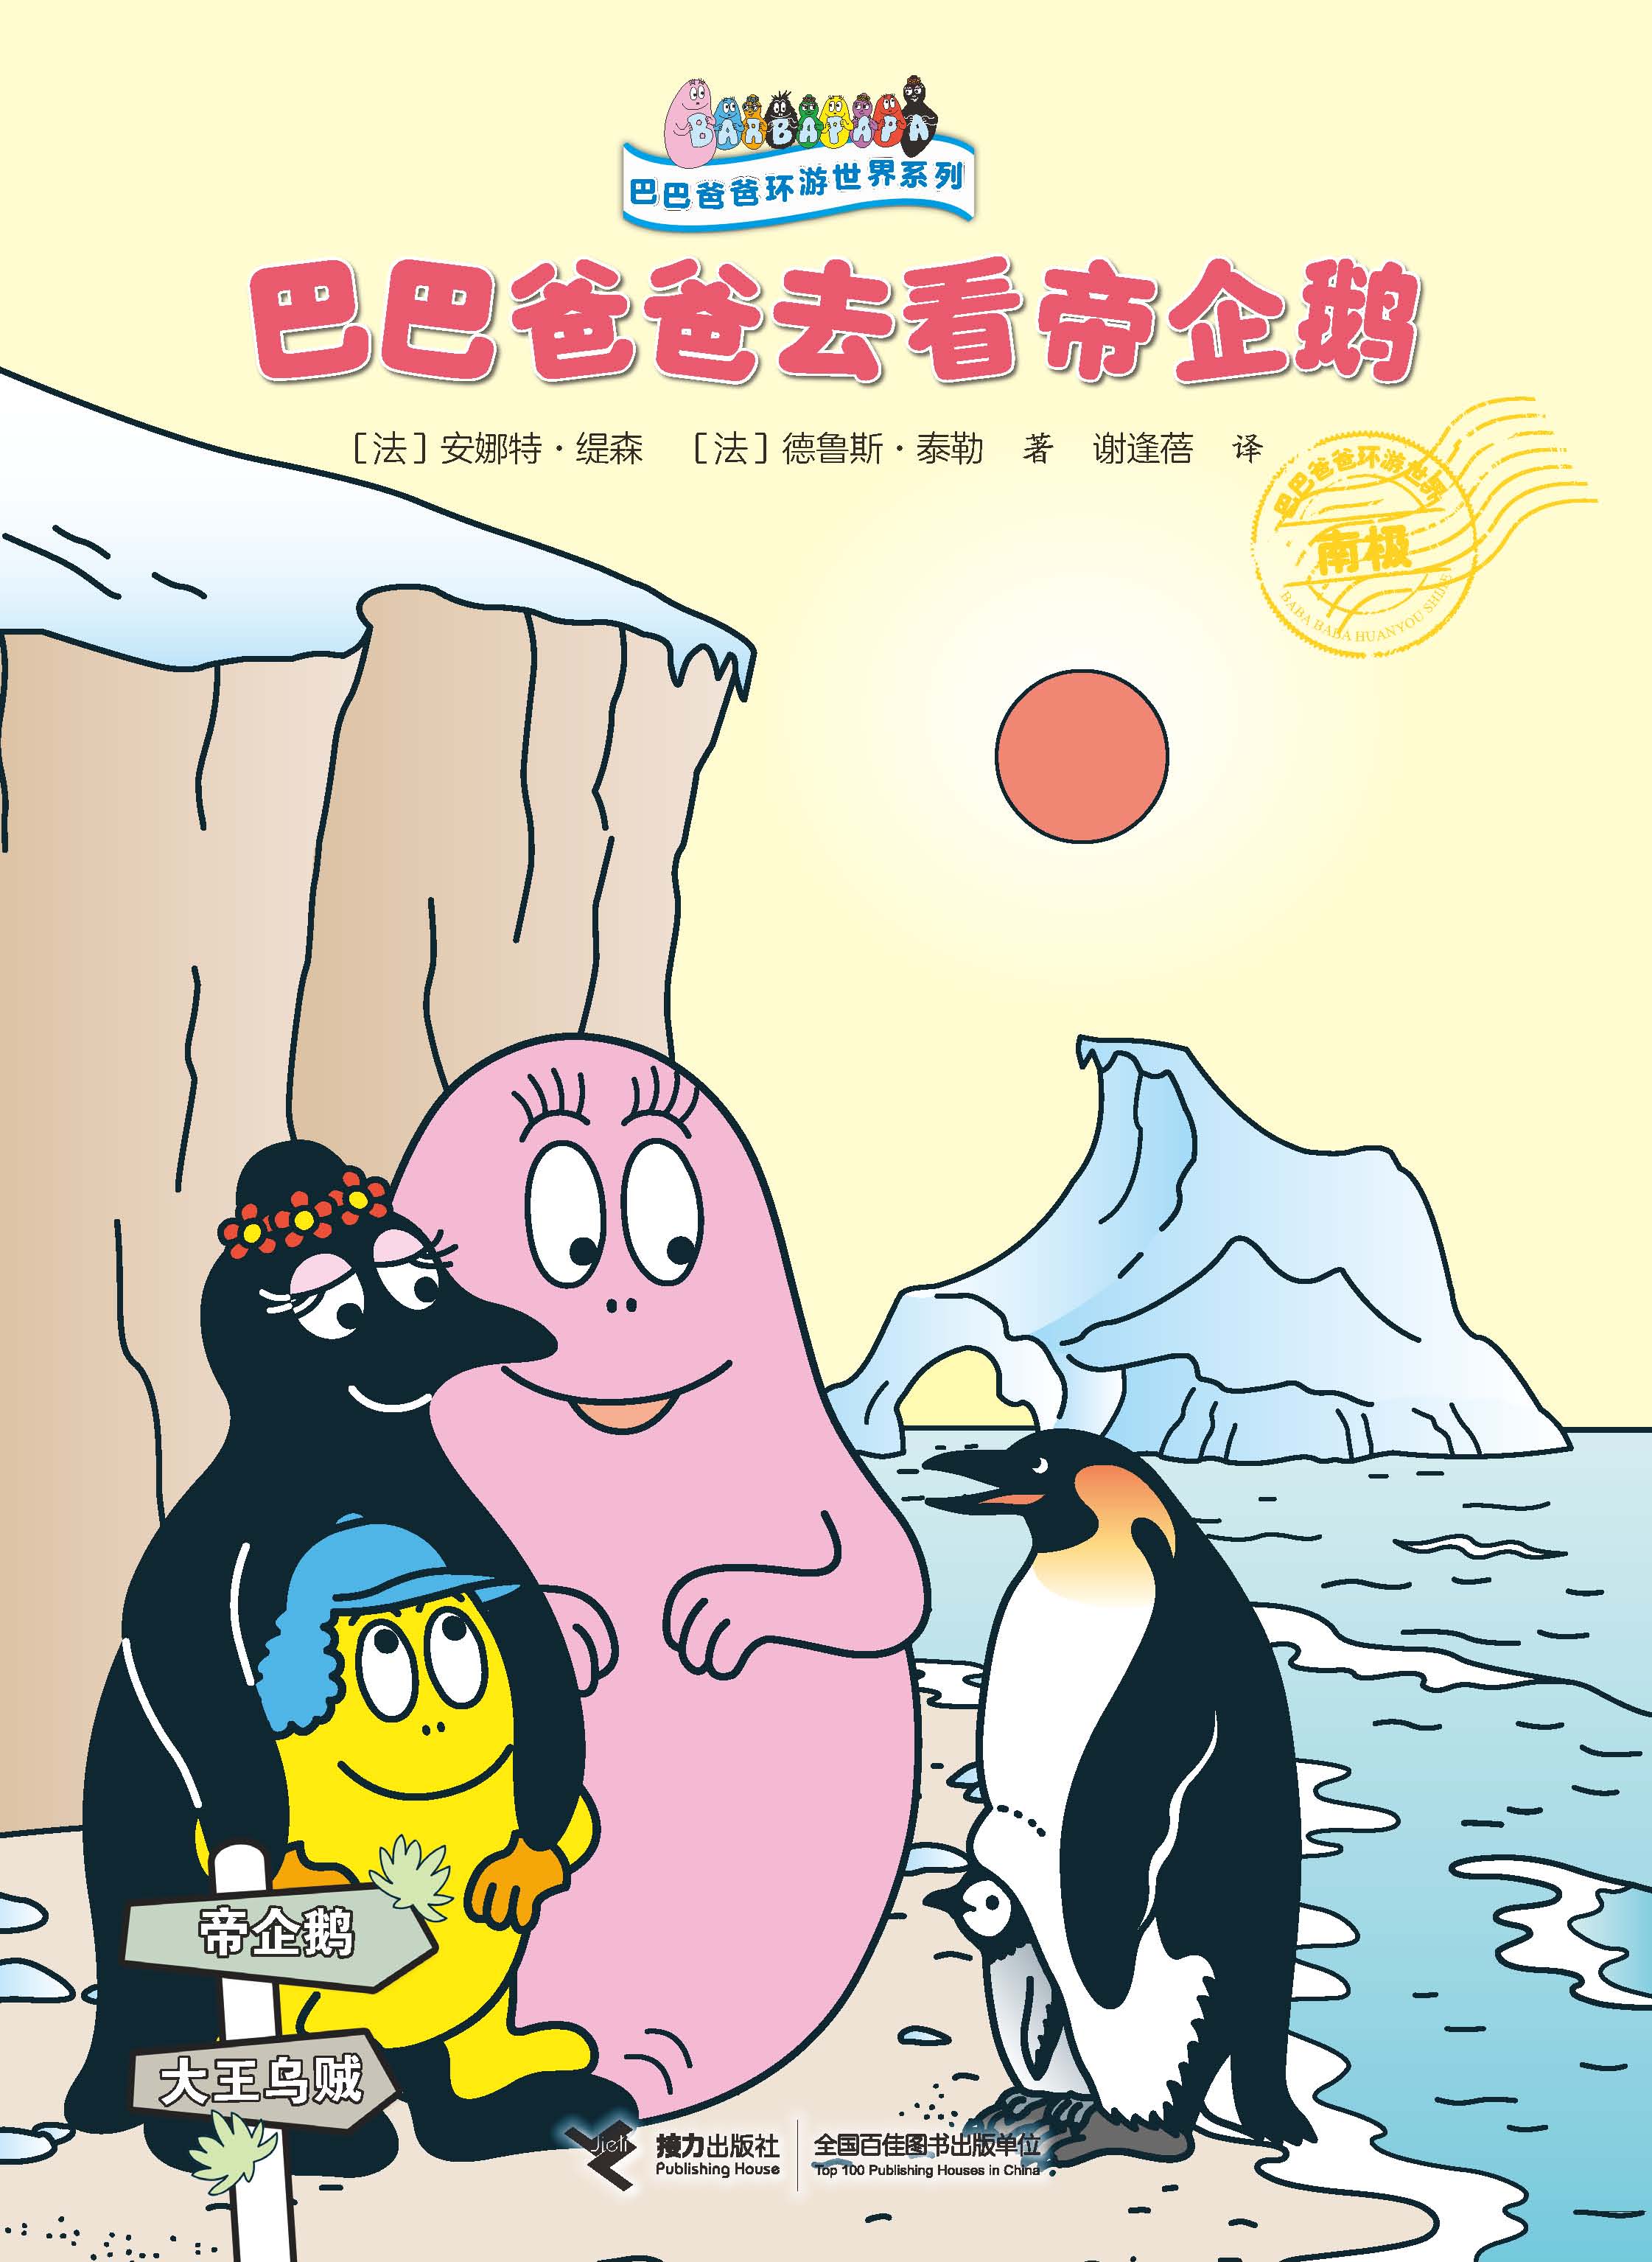 巴巴爸爸环游世界系列:巴巴爸爸去看帝企鹅